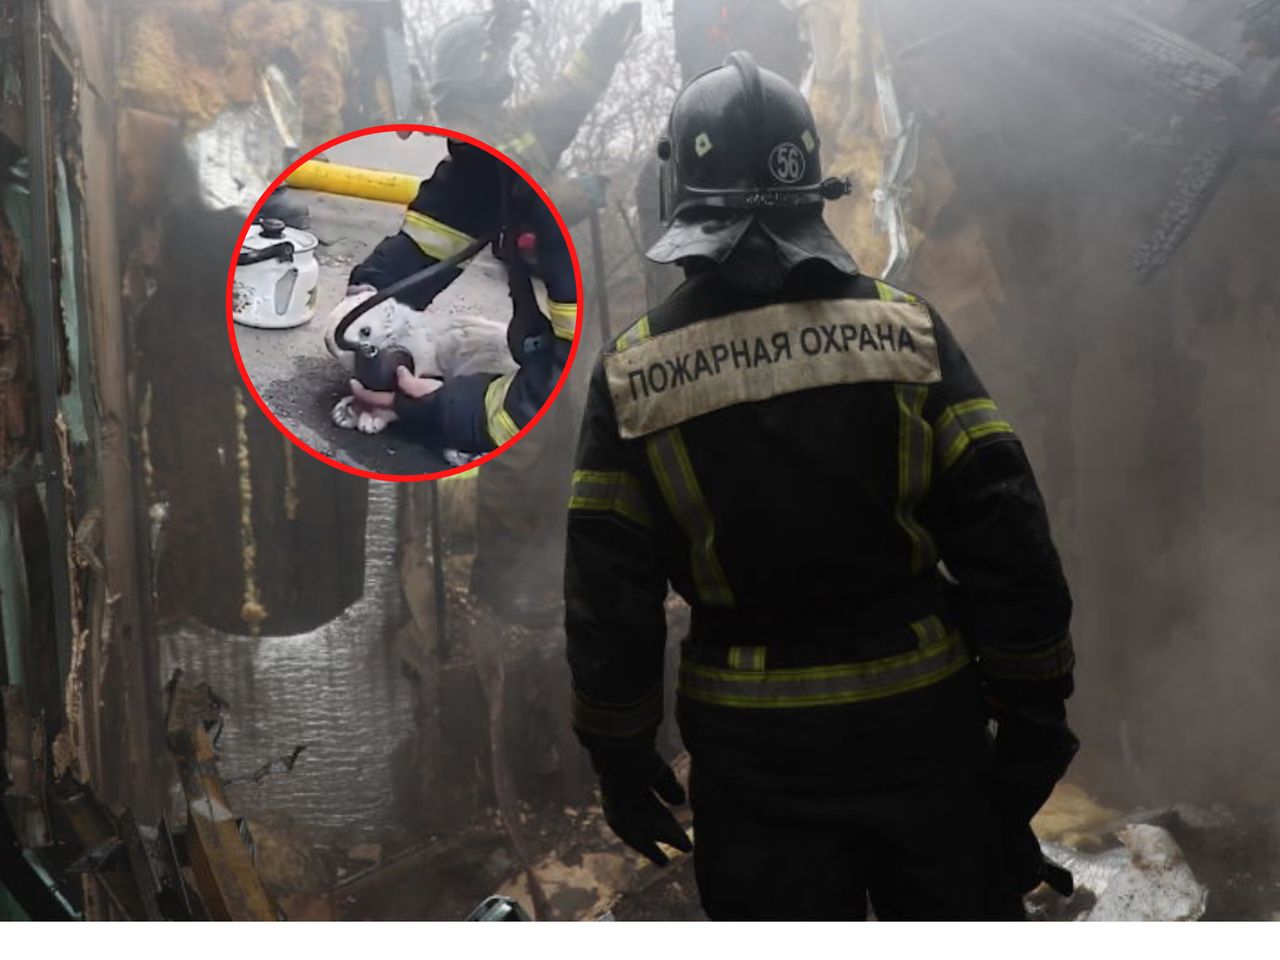 Ukraińscy strażacy uratowali kota z płonącego budynku. Akcję uwieczniono na nagraniu